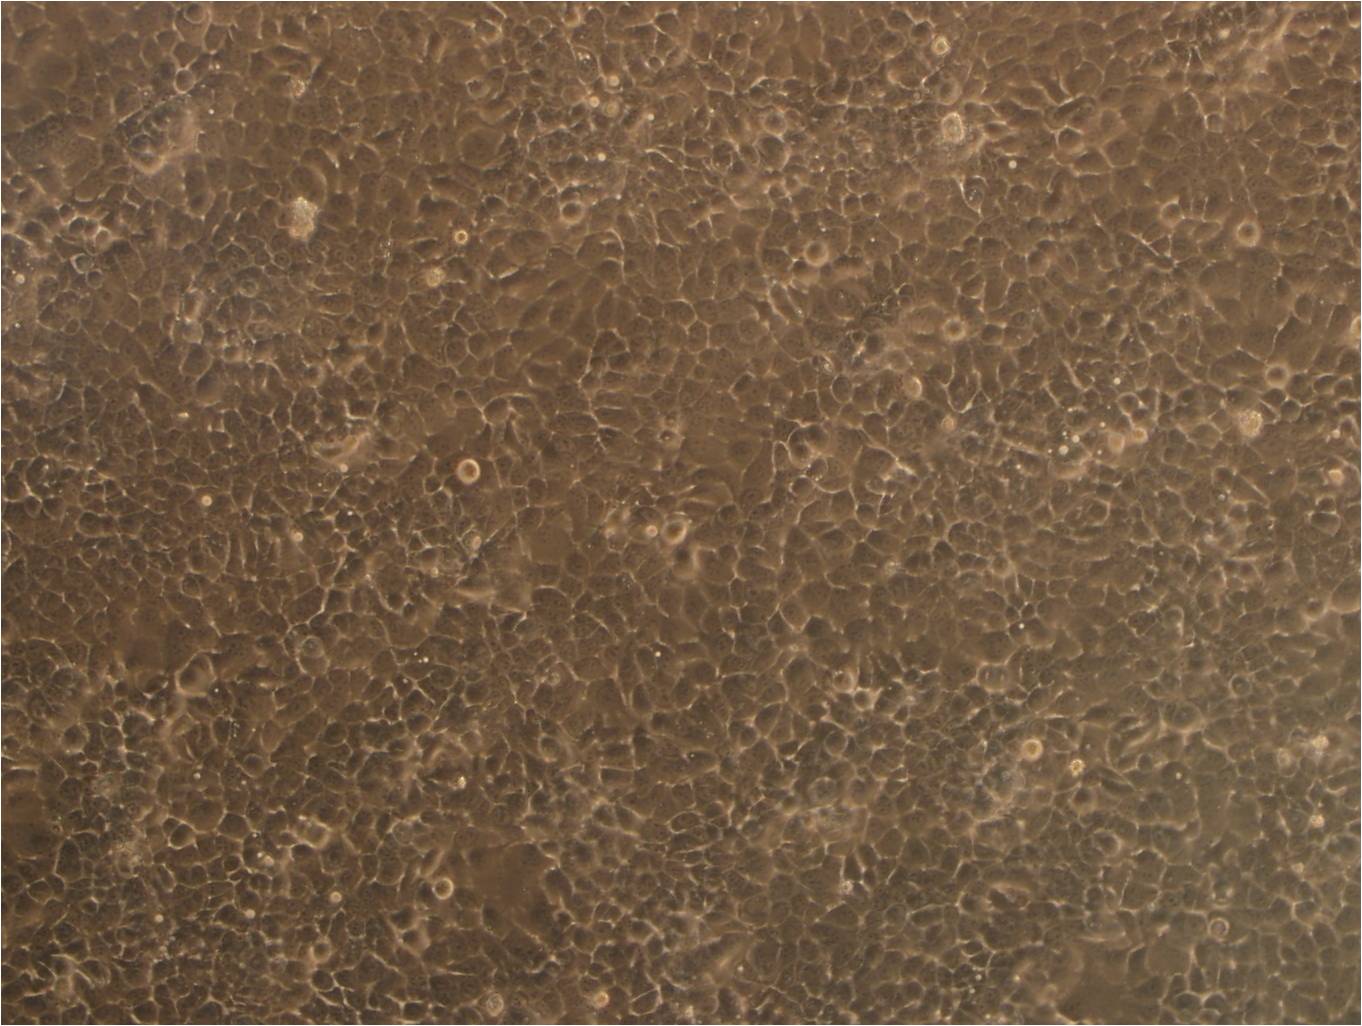 TMK-1 epithelioid cells人胃癌细胞系